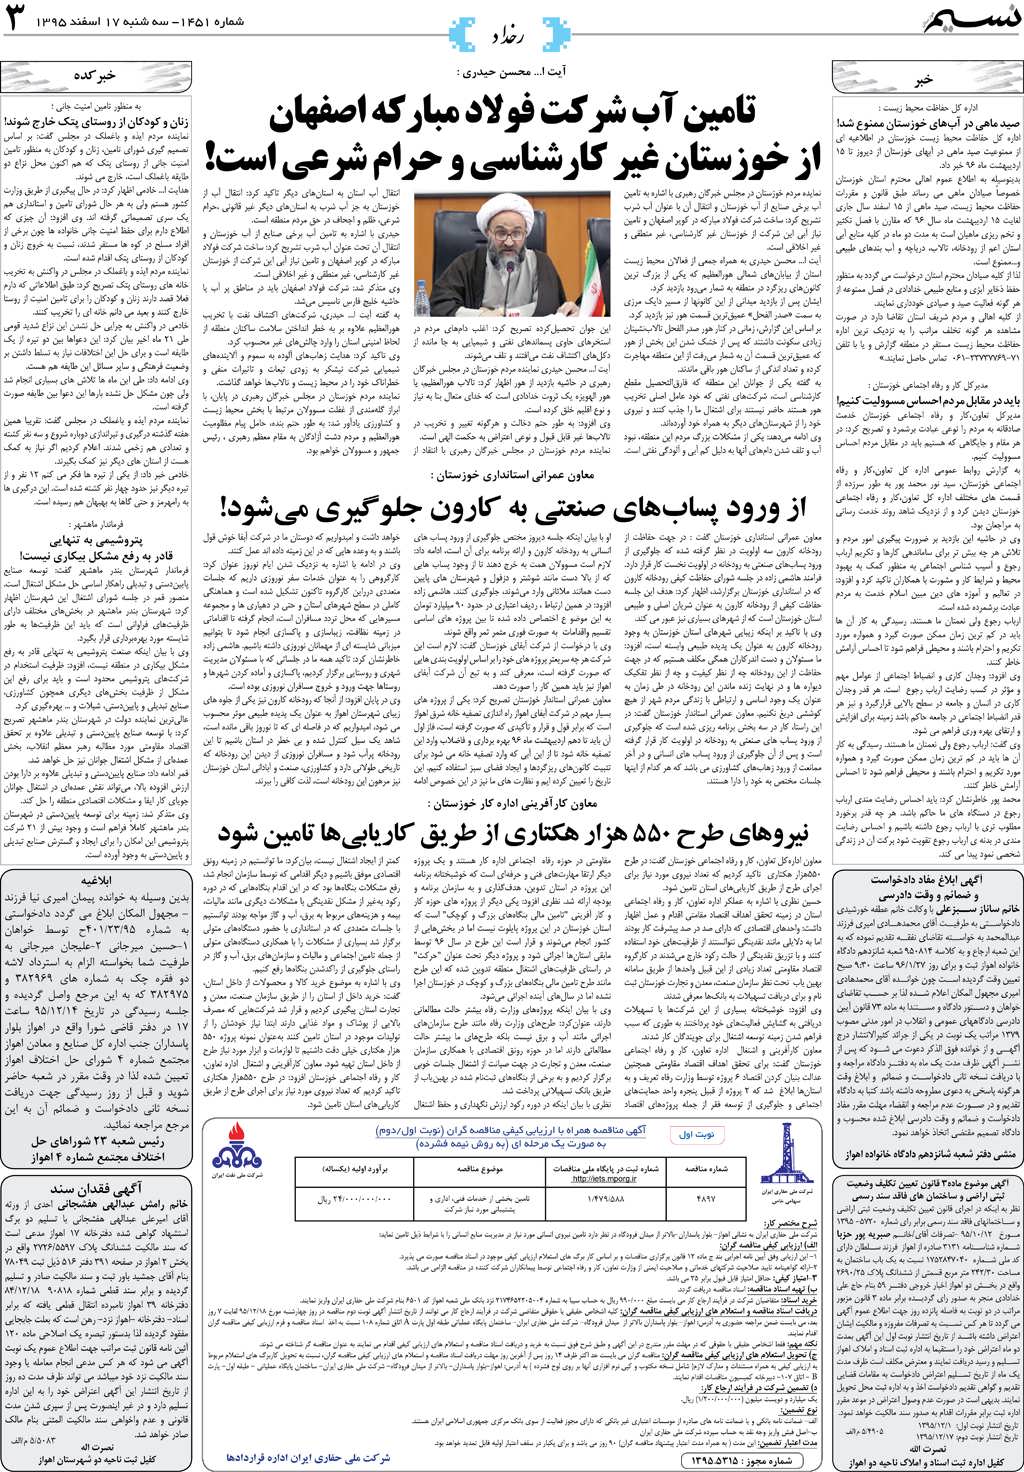 صفحه رخداد روزنامه نسیم شماره 1451